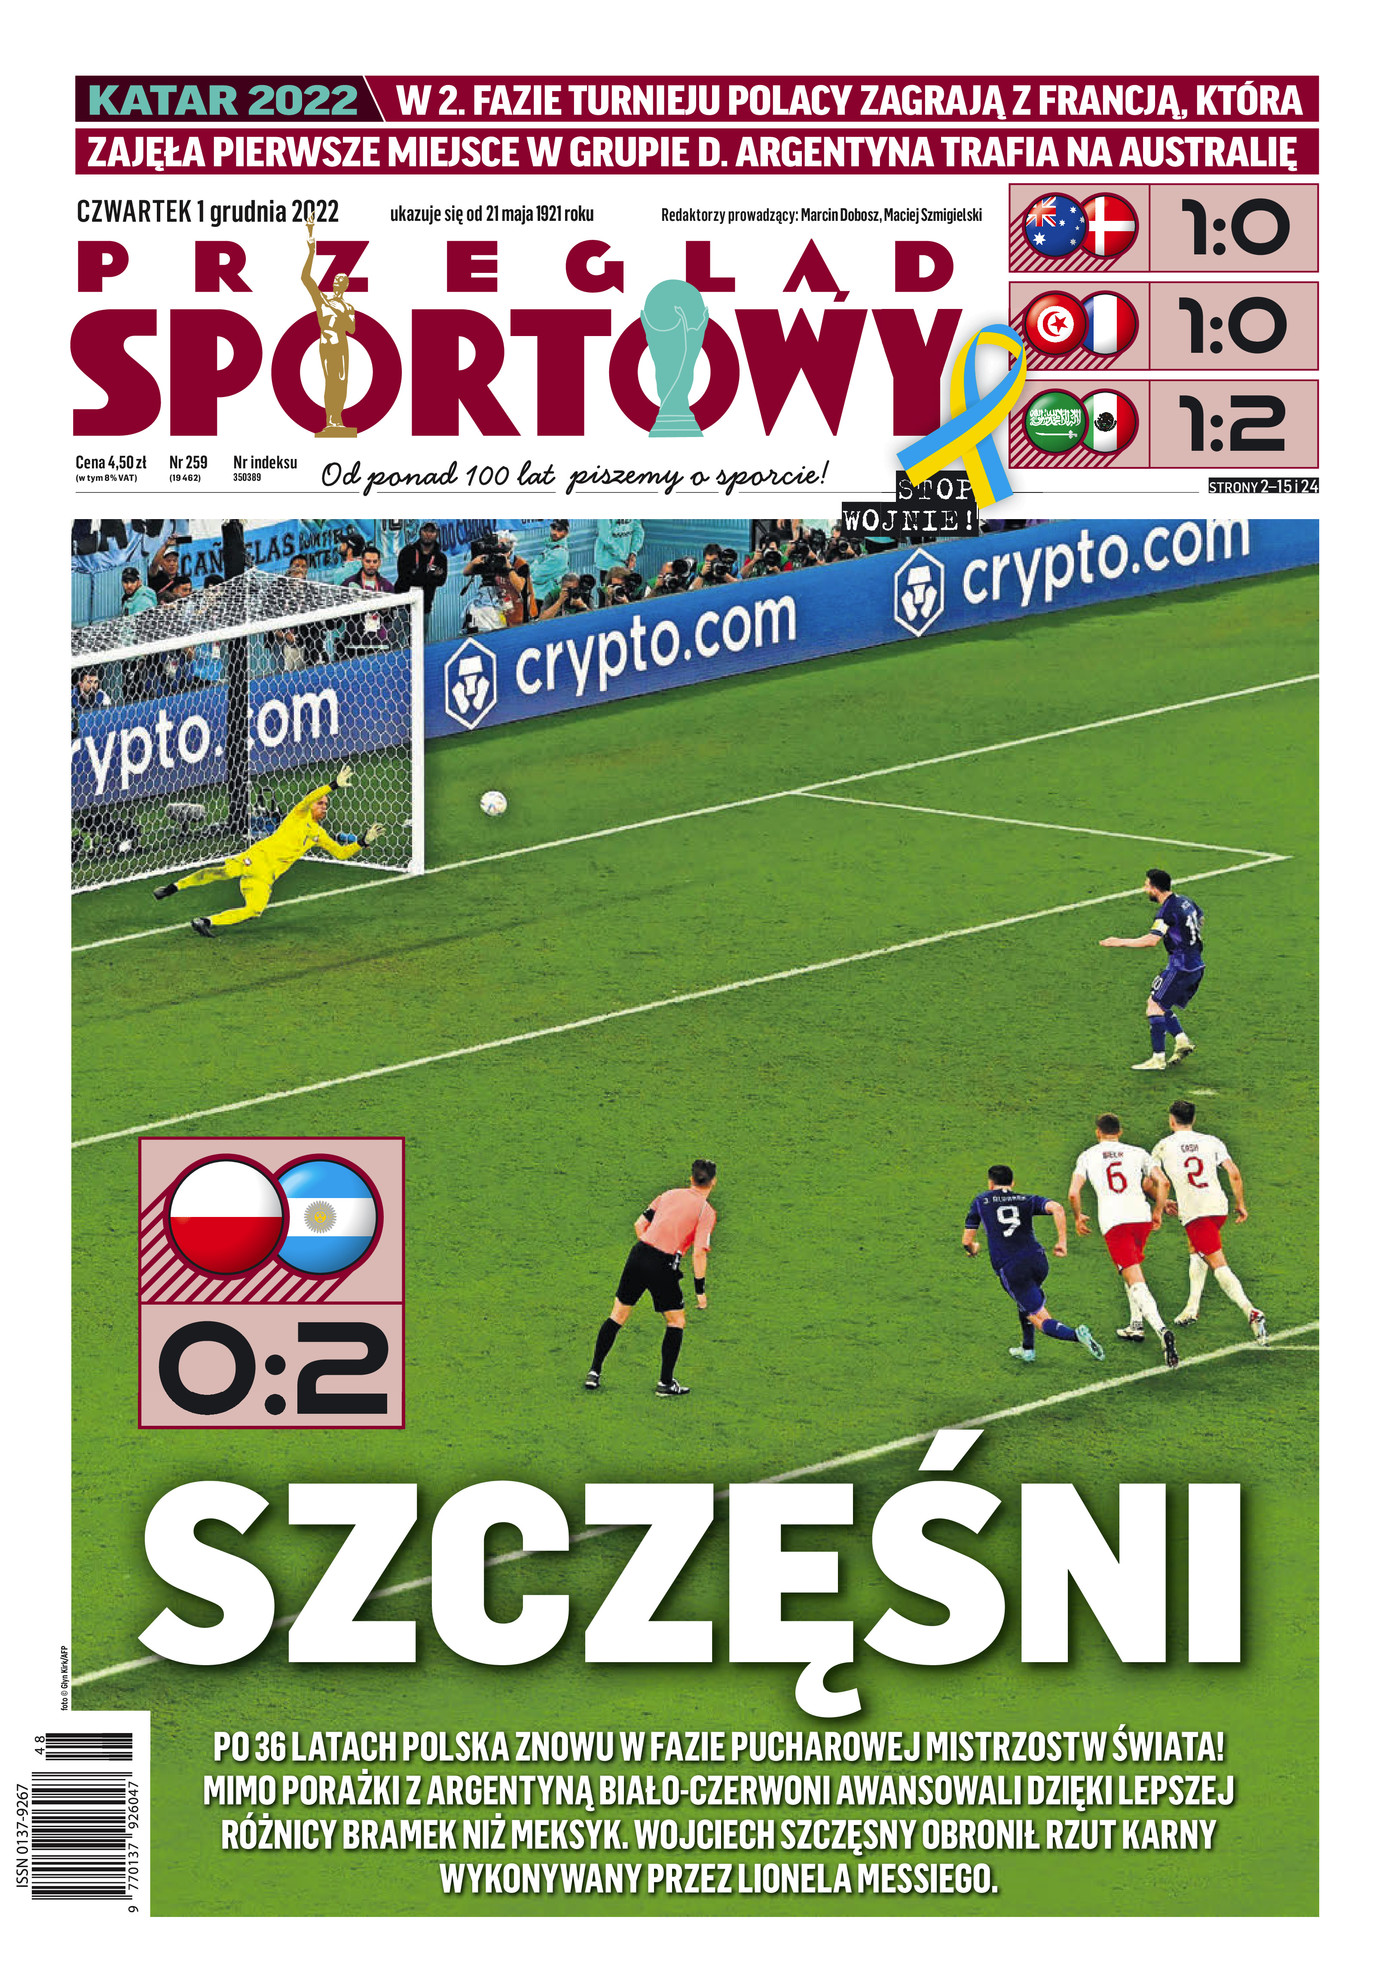 Przegląd Sportowy po meczu Polska - Argentyna 0:2 (30.11.2022).